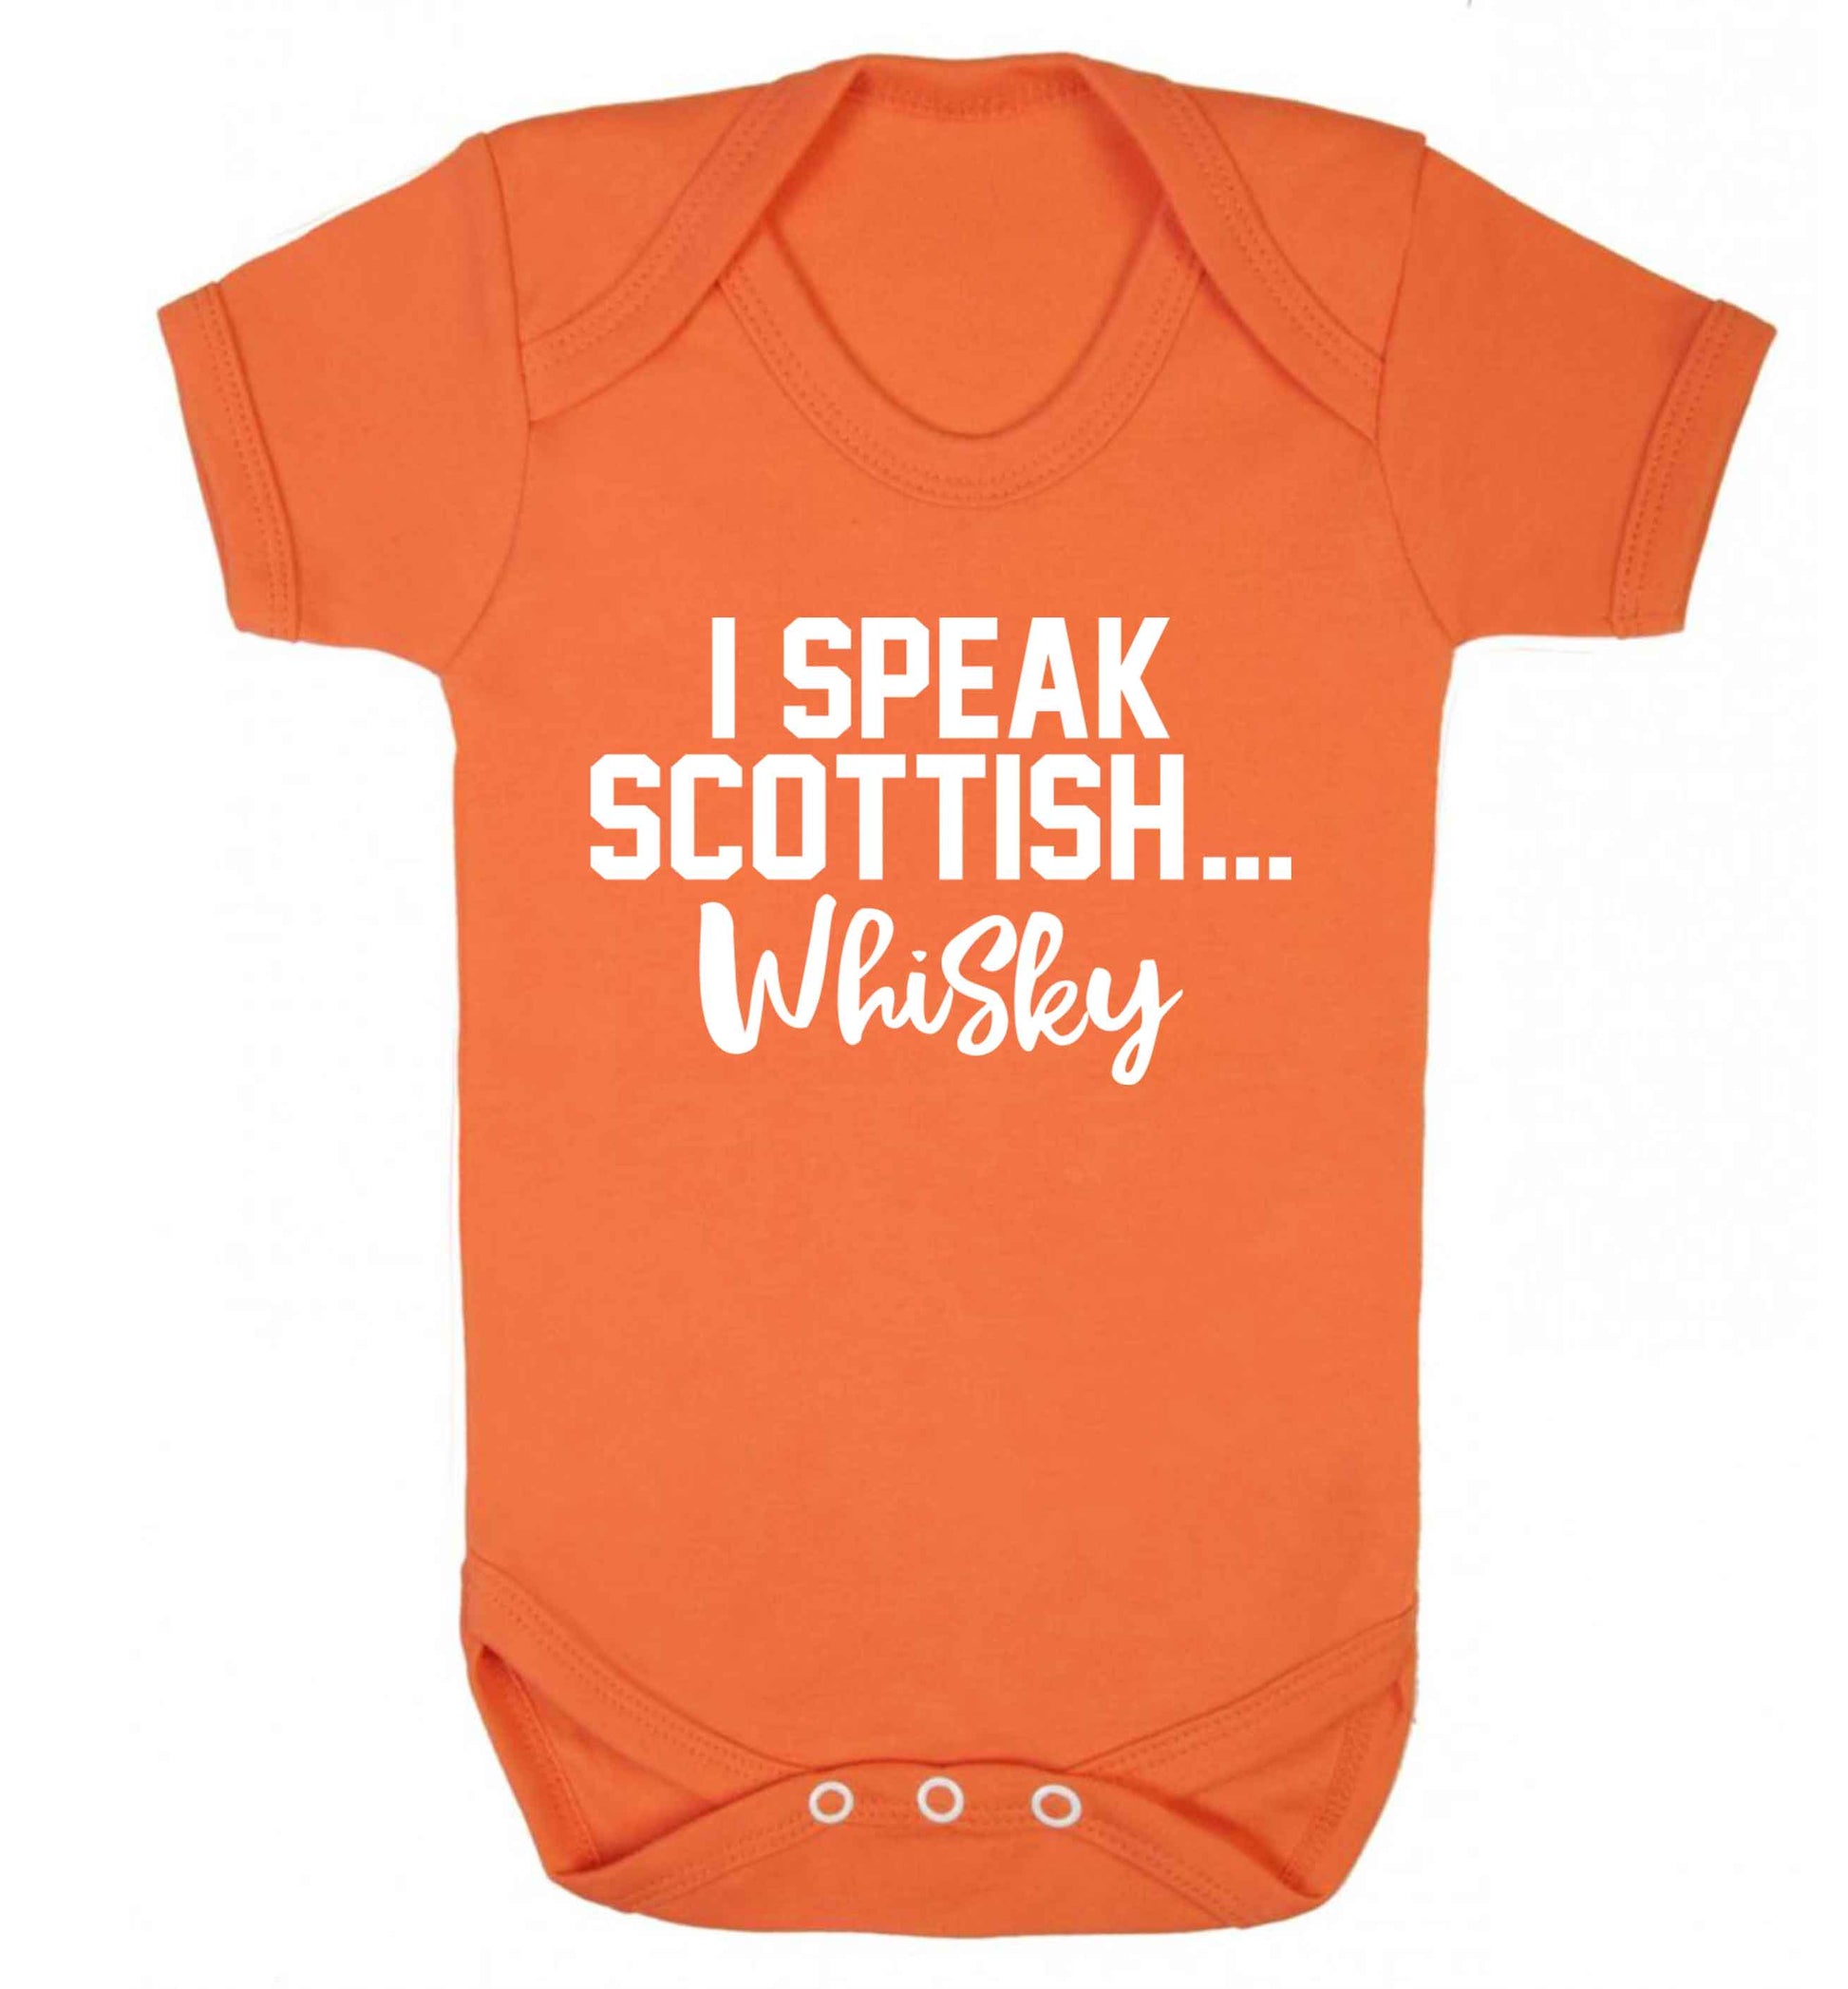 I speak scottish...whisky Baby Vest orange 18-24 months